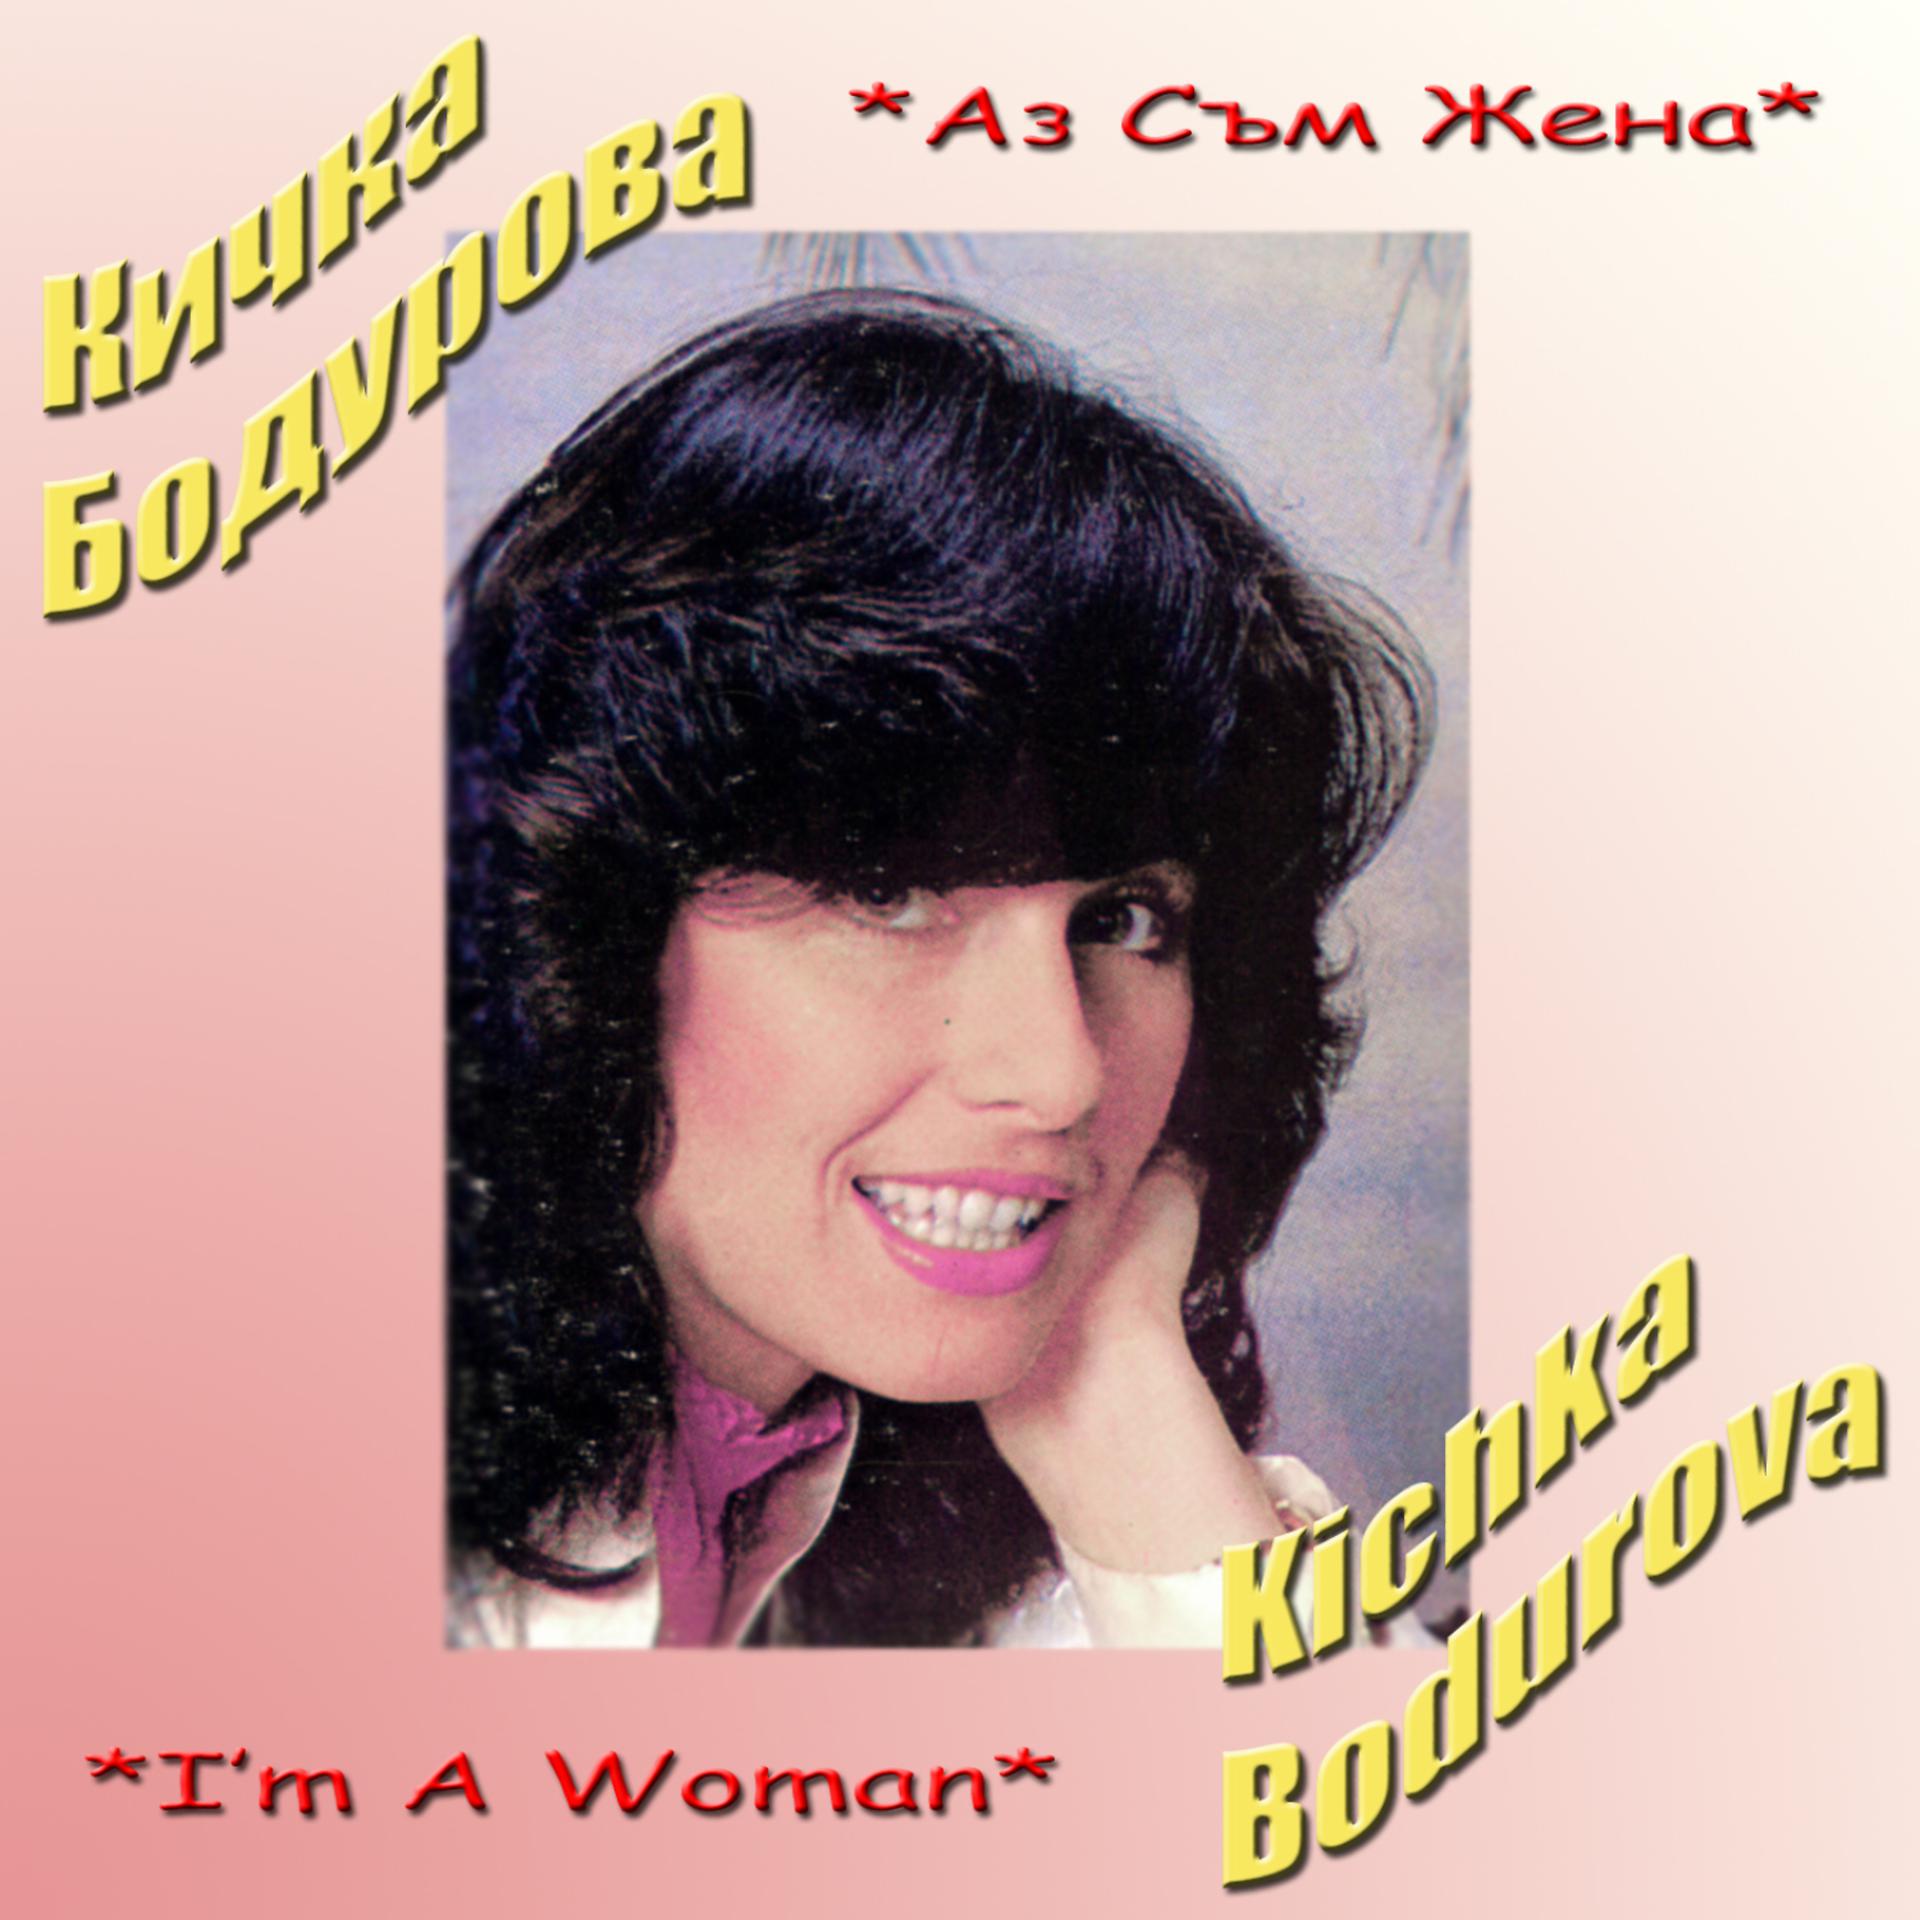 Песня на жену на телефон. Kichka Bodurova. Певица блюз Италия большой кичкой.